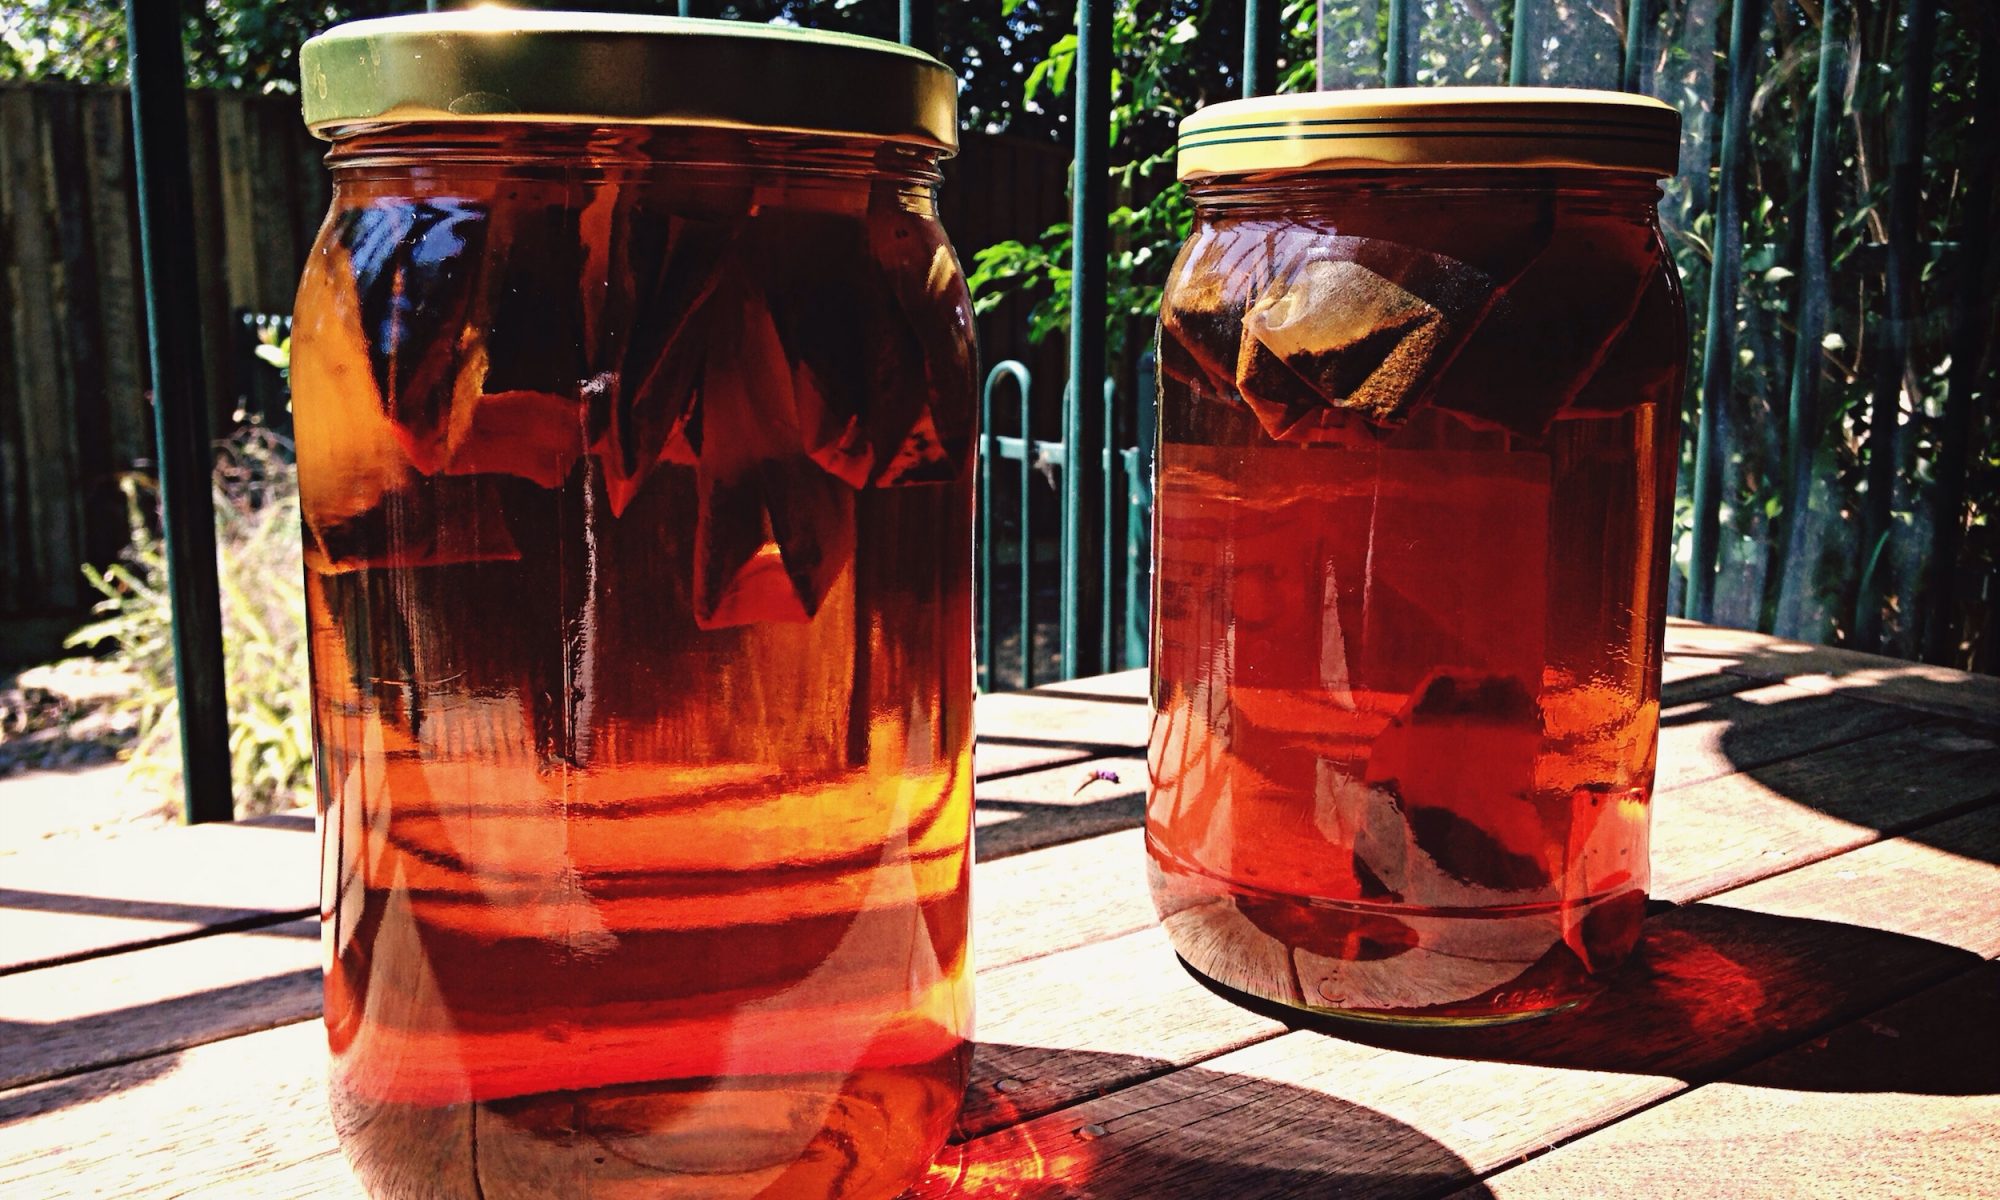 Trà mặt trời là một phương pháp pha nước lạnh chậm. Kỹ thuật này tạo ra một loại trà nhẹ nhàng hơn, sắc nét và rõ ràng hơn so với các loại trà được pha theo cách truyền thống. 